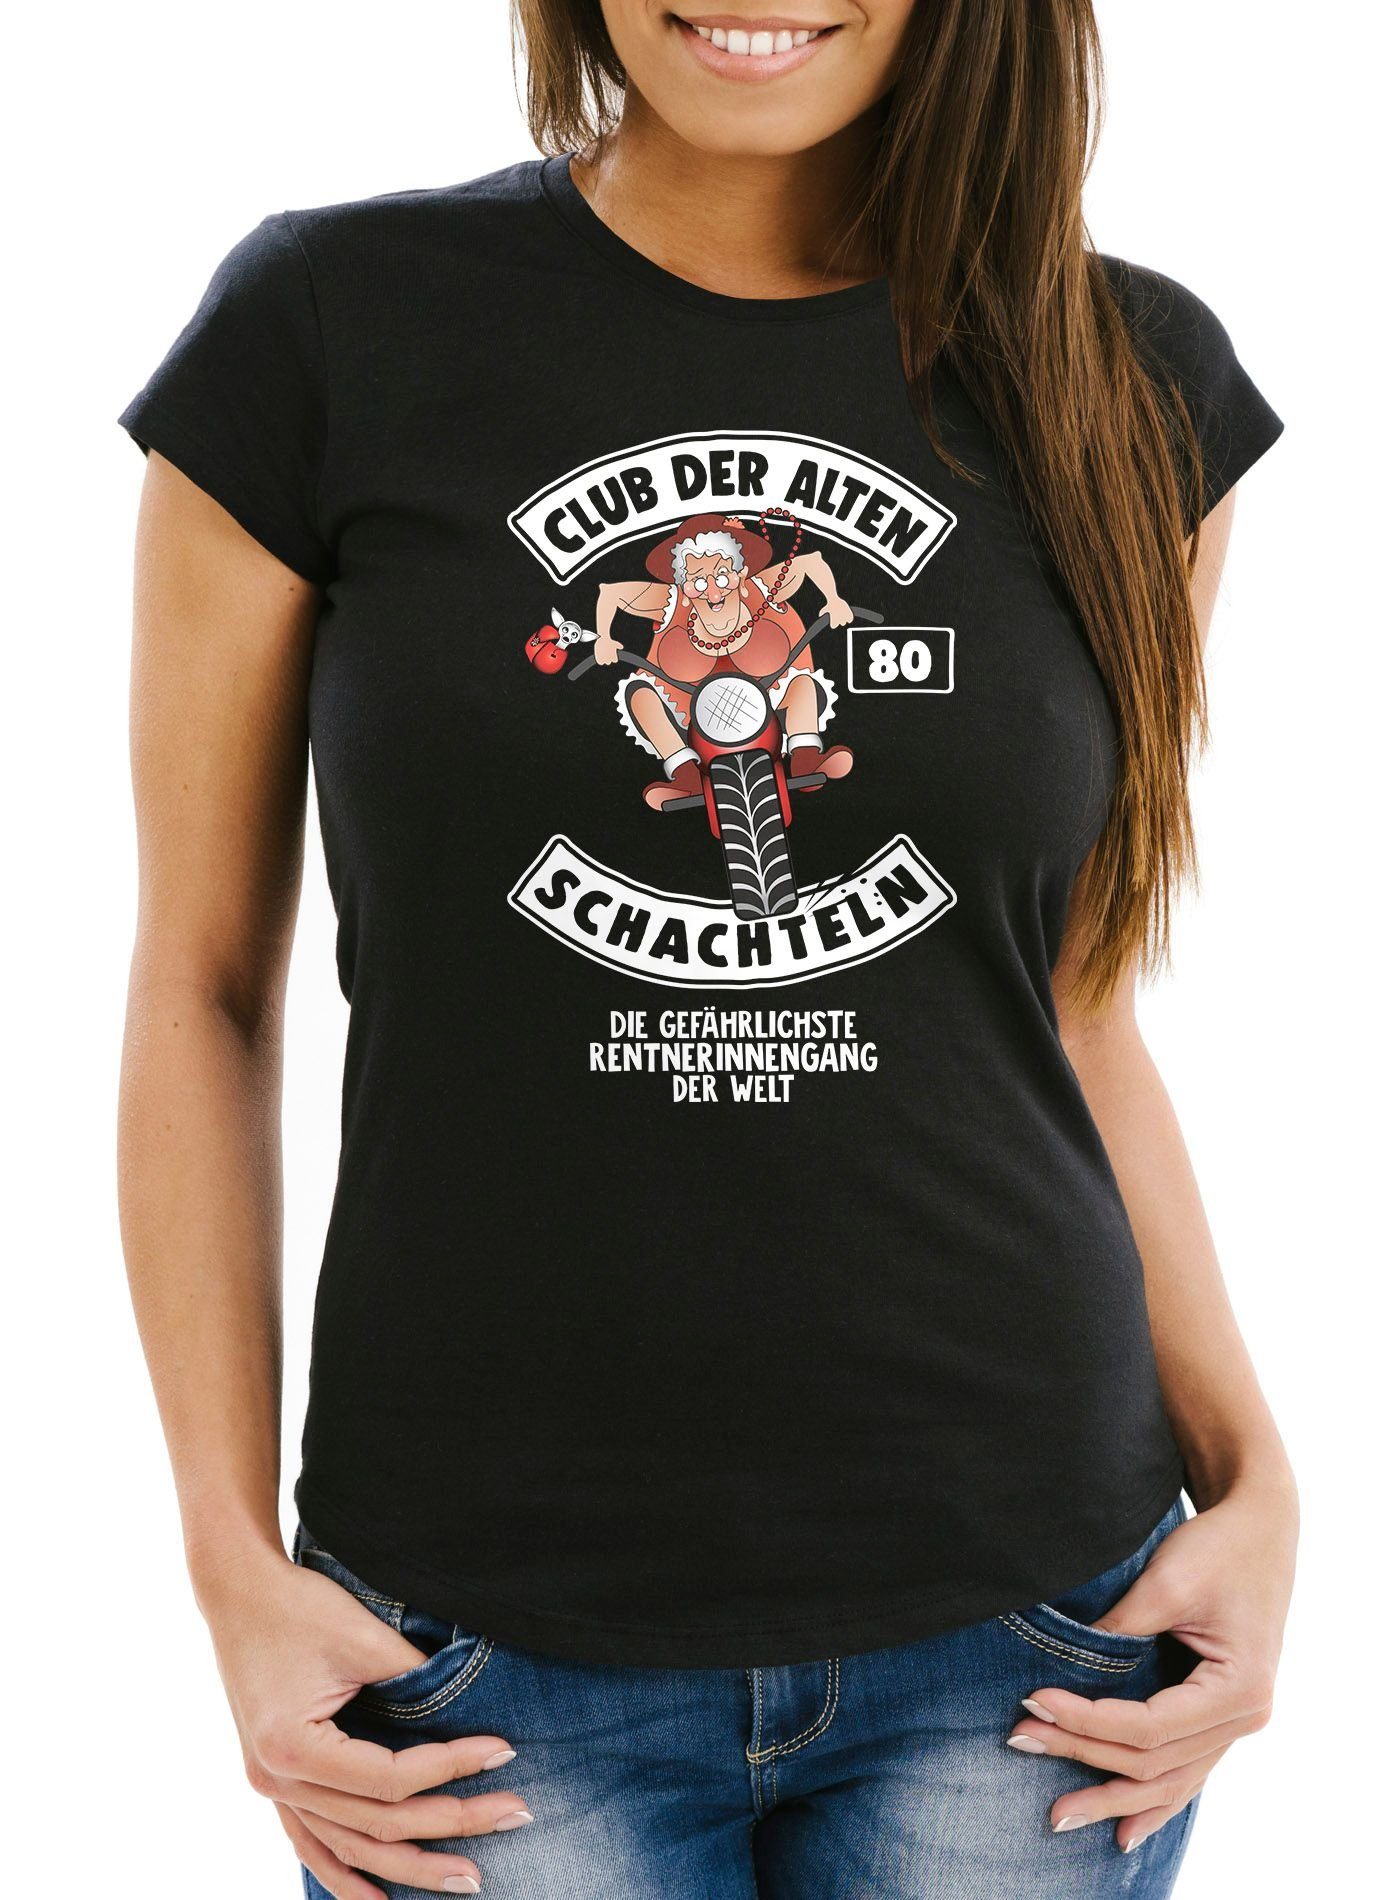 Club Der Schachteln 80 Geburtstag Moonworks® ältere Runder Damen mit Print alten Geschenk für Geburtstags-T-Shirt Frauen Fun-Shirt schwarz Print-Shirt MoonWorks